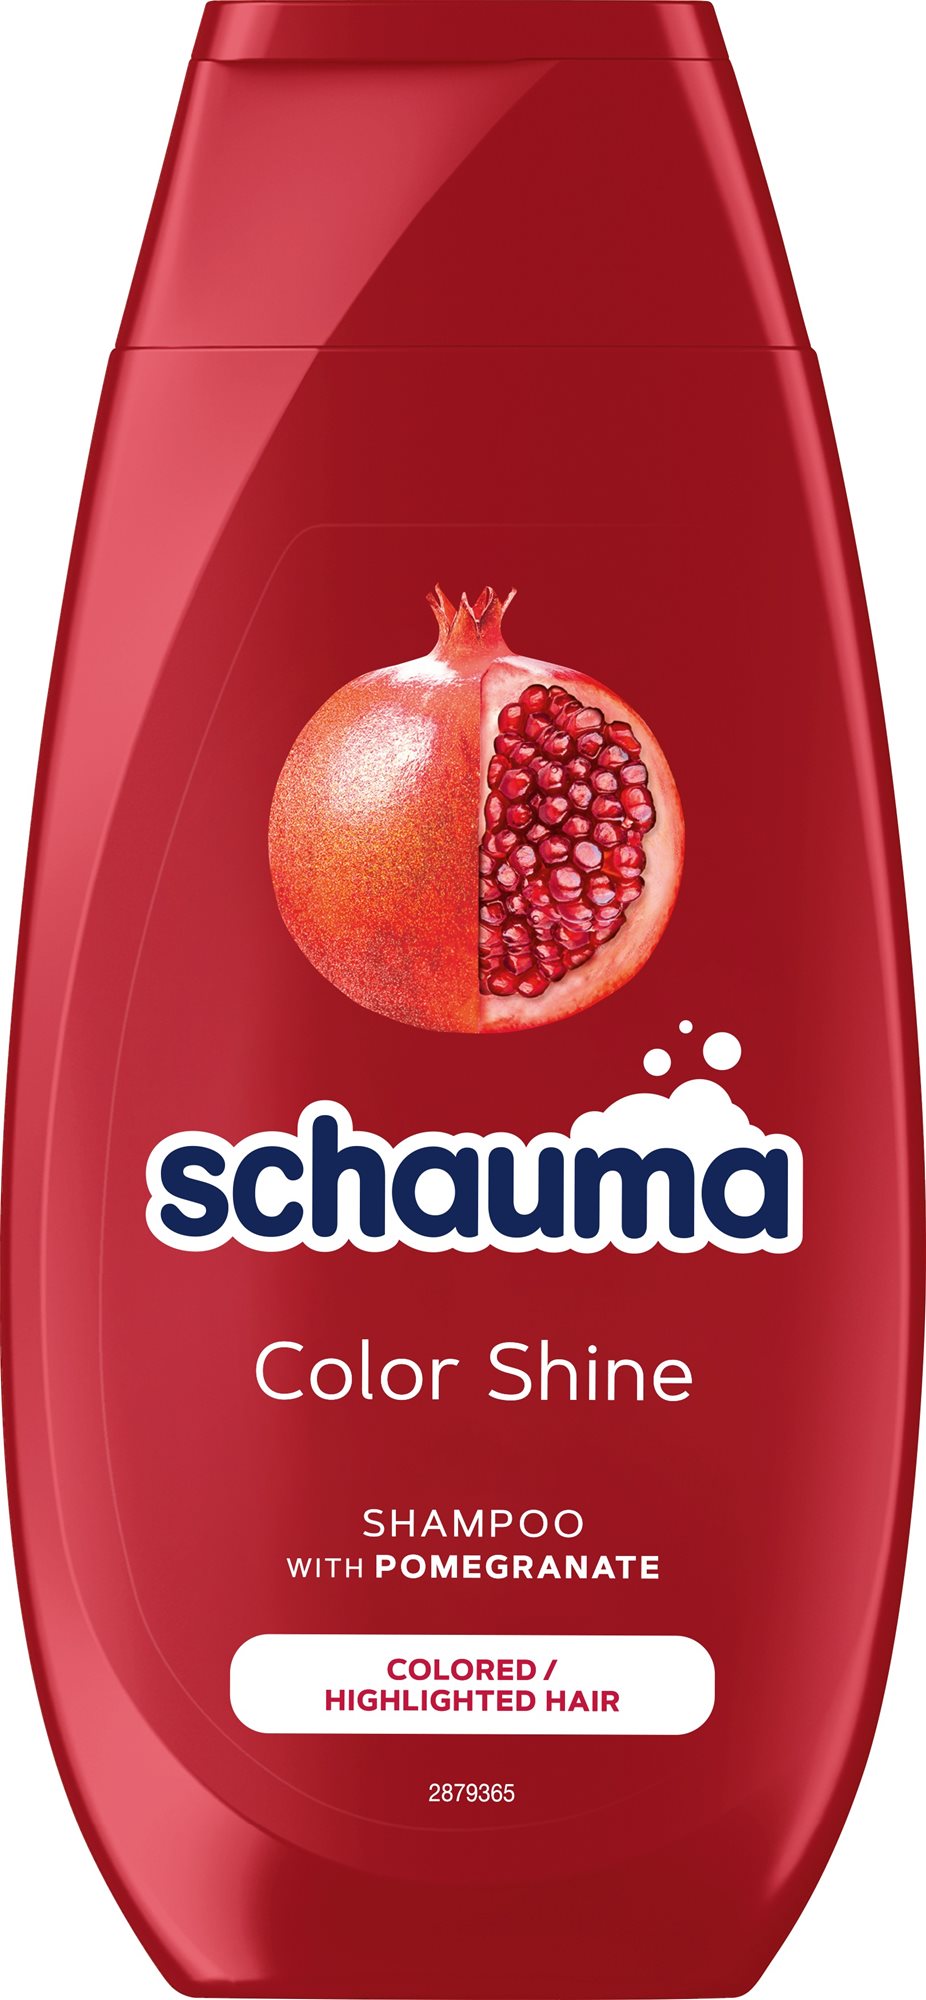 SCHAUMA Shampoo Color Shine 250 ml